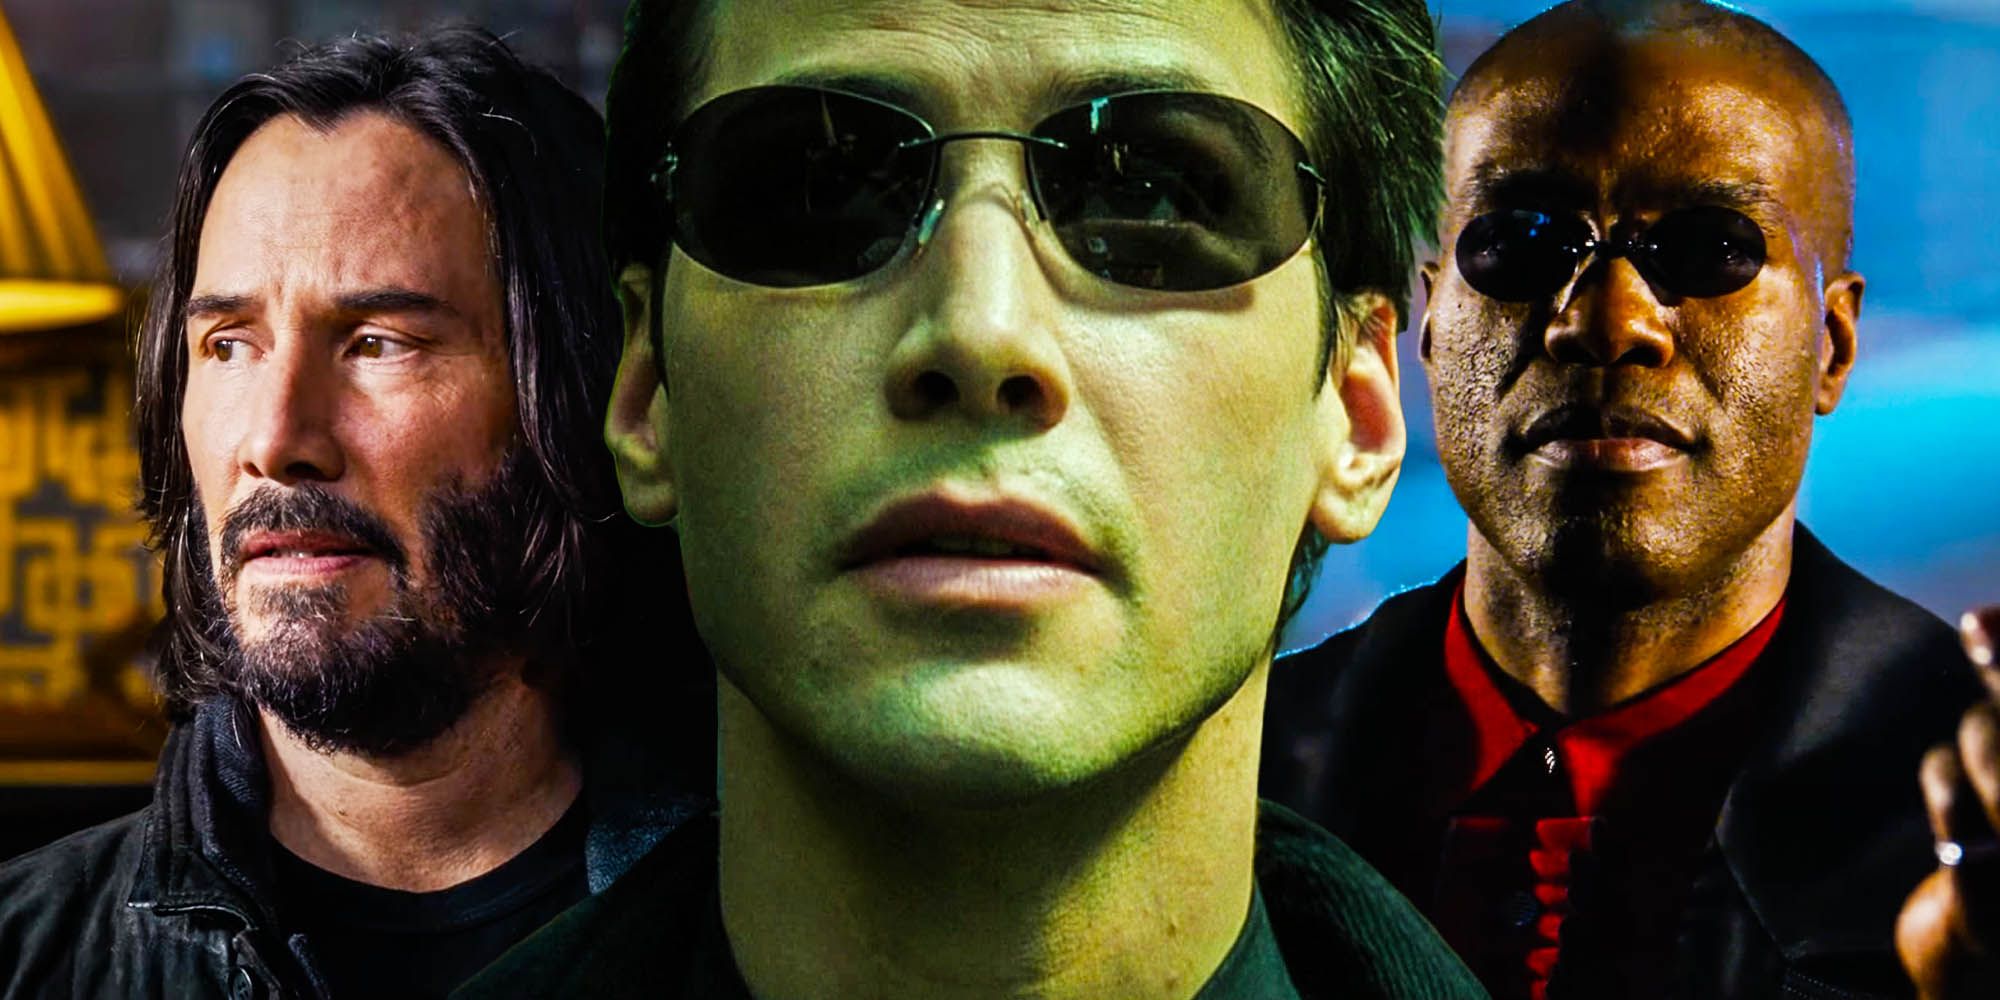 Is Matrix resurrections a sequel or prequel?